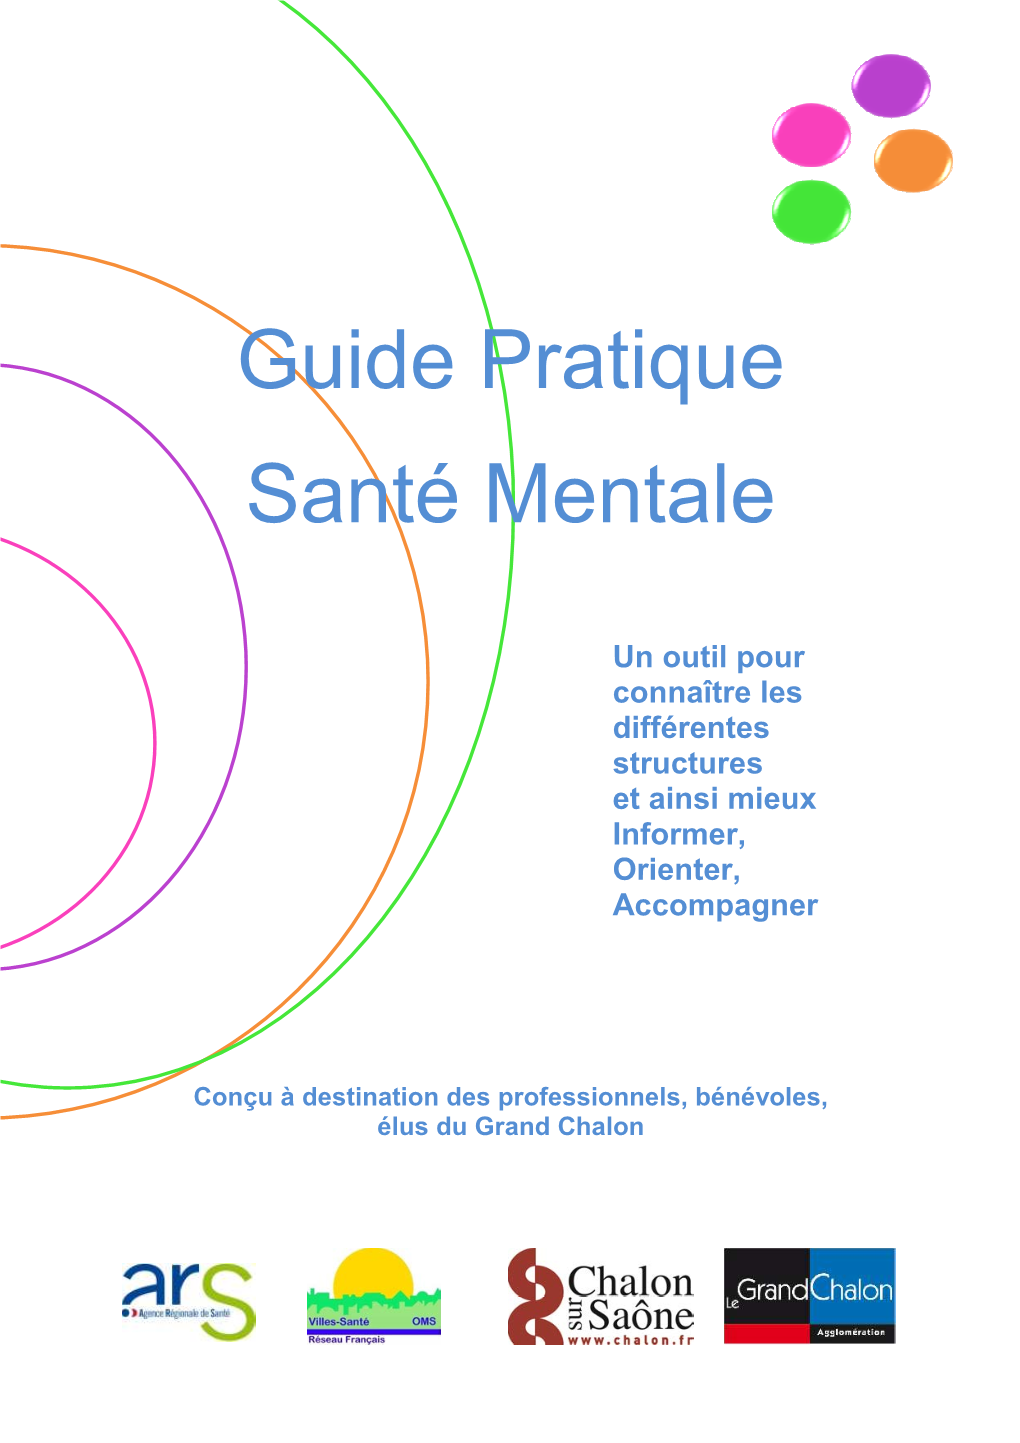 Guide Pratique Santé Mentale